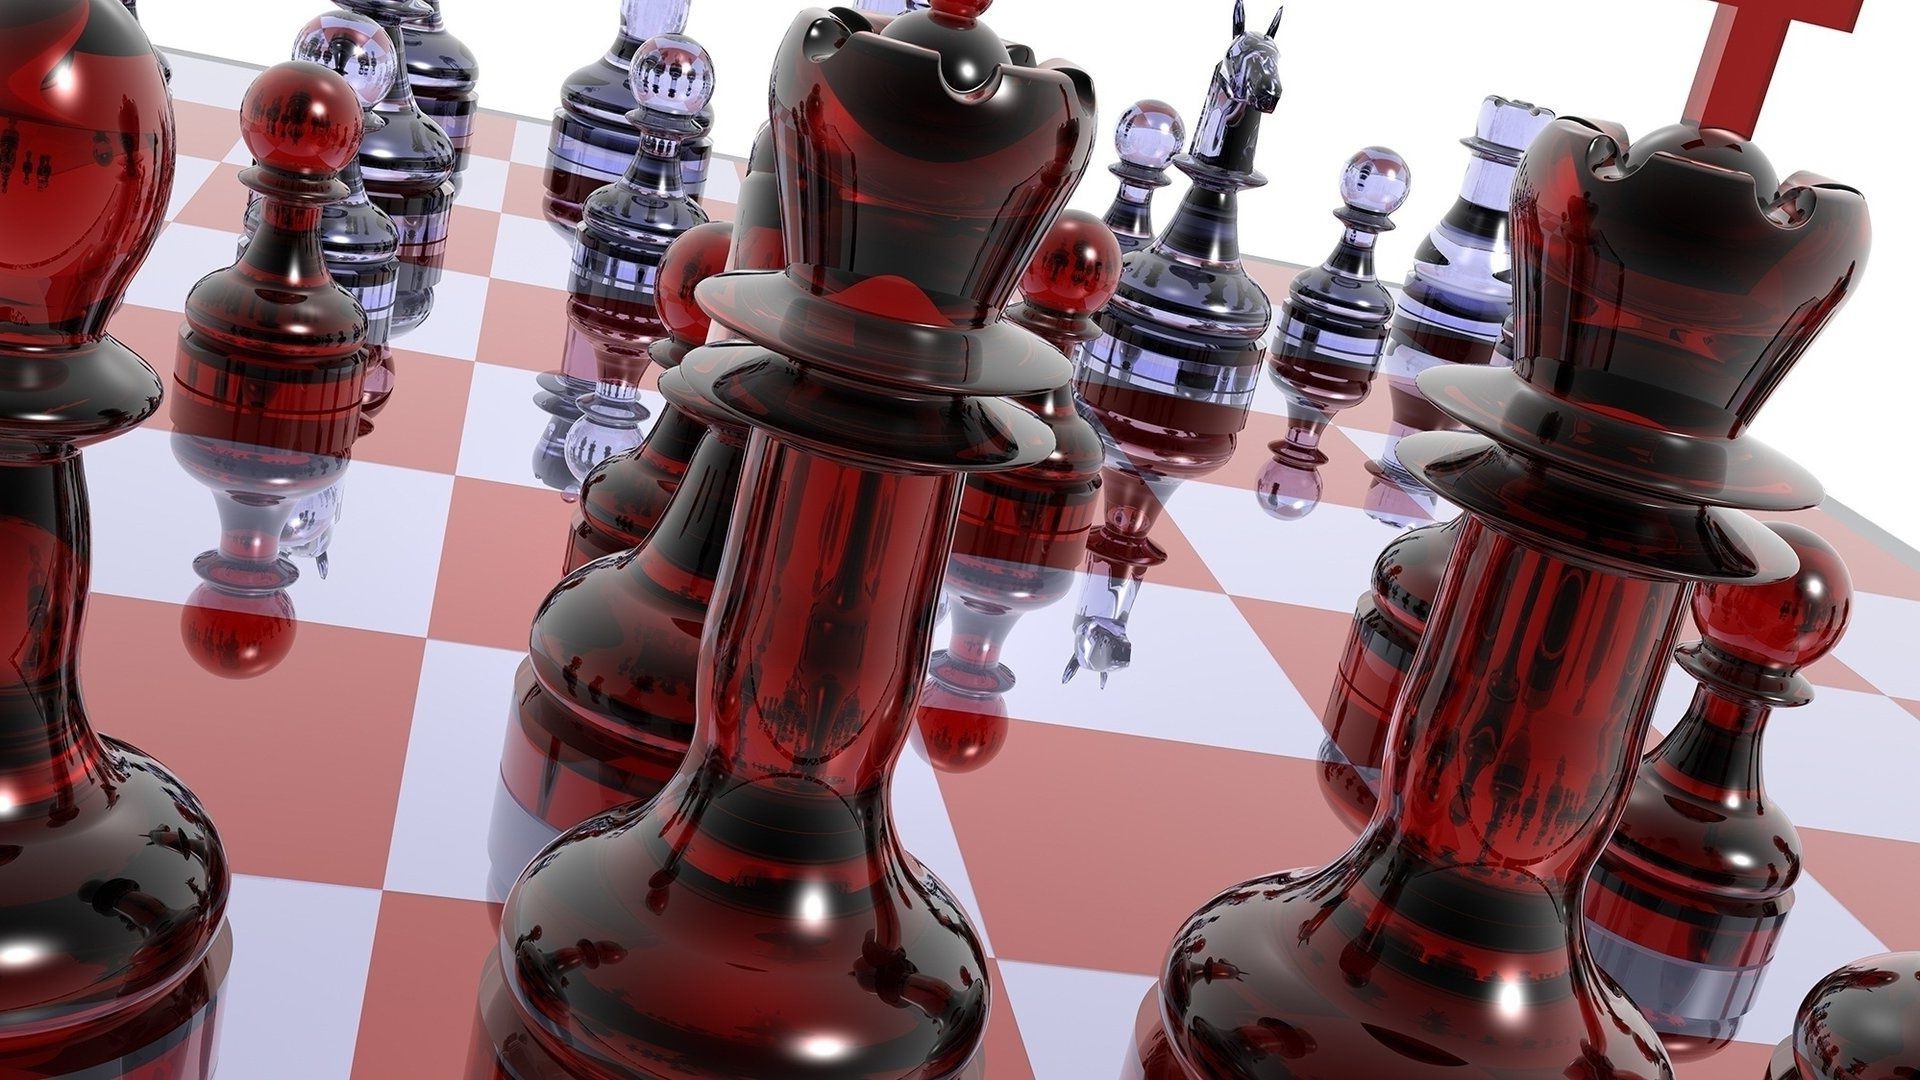 яркие краски шахматы стратегии рыцарь победы конкурс выиграть ломбарды отдых игры королева играть интеллект решение дружище боевой победитель